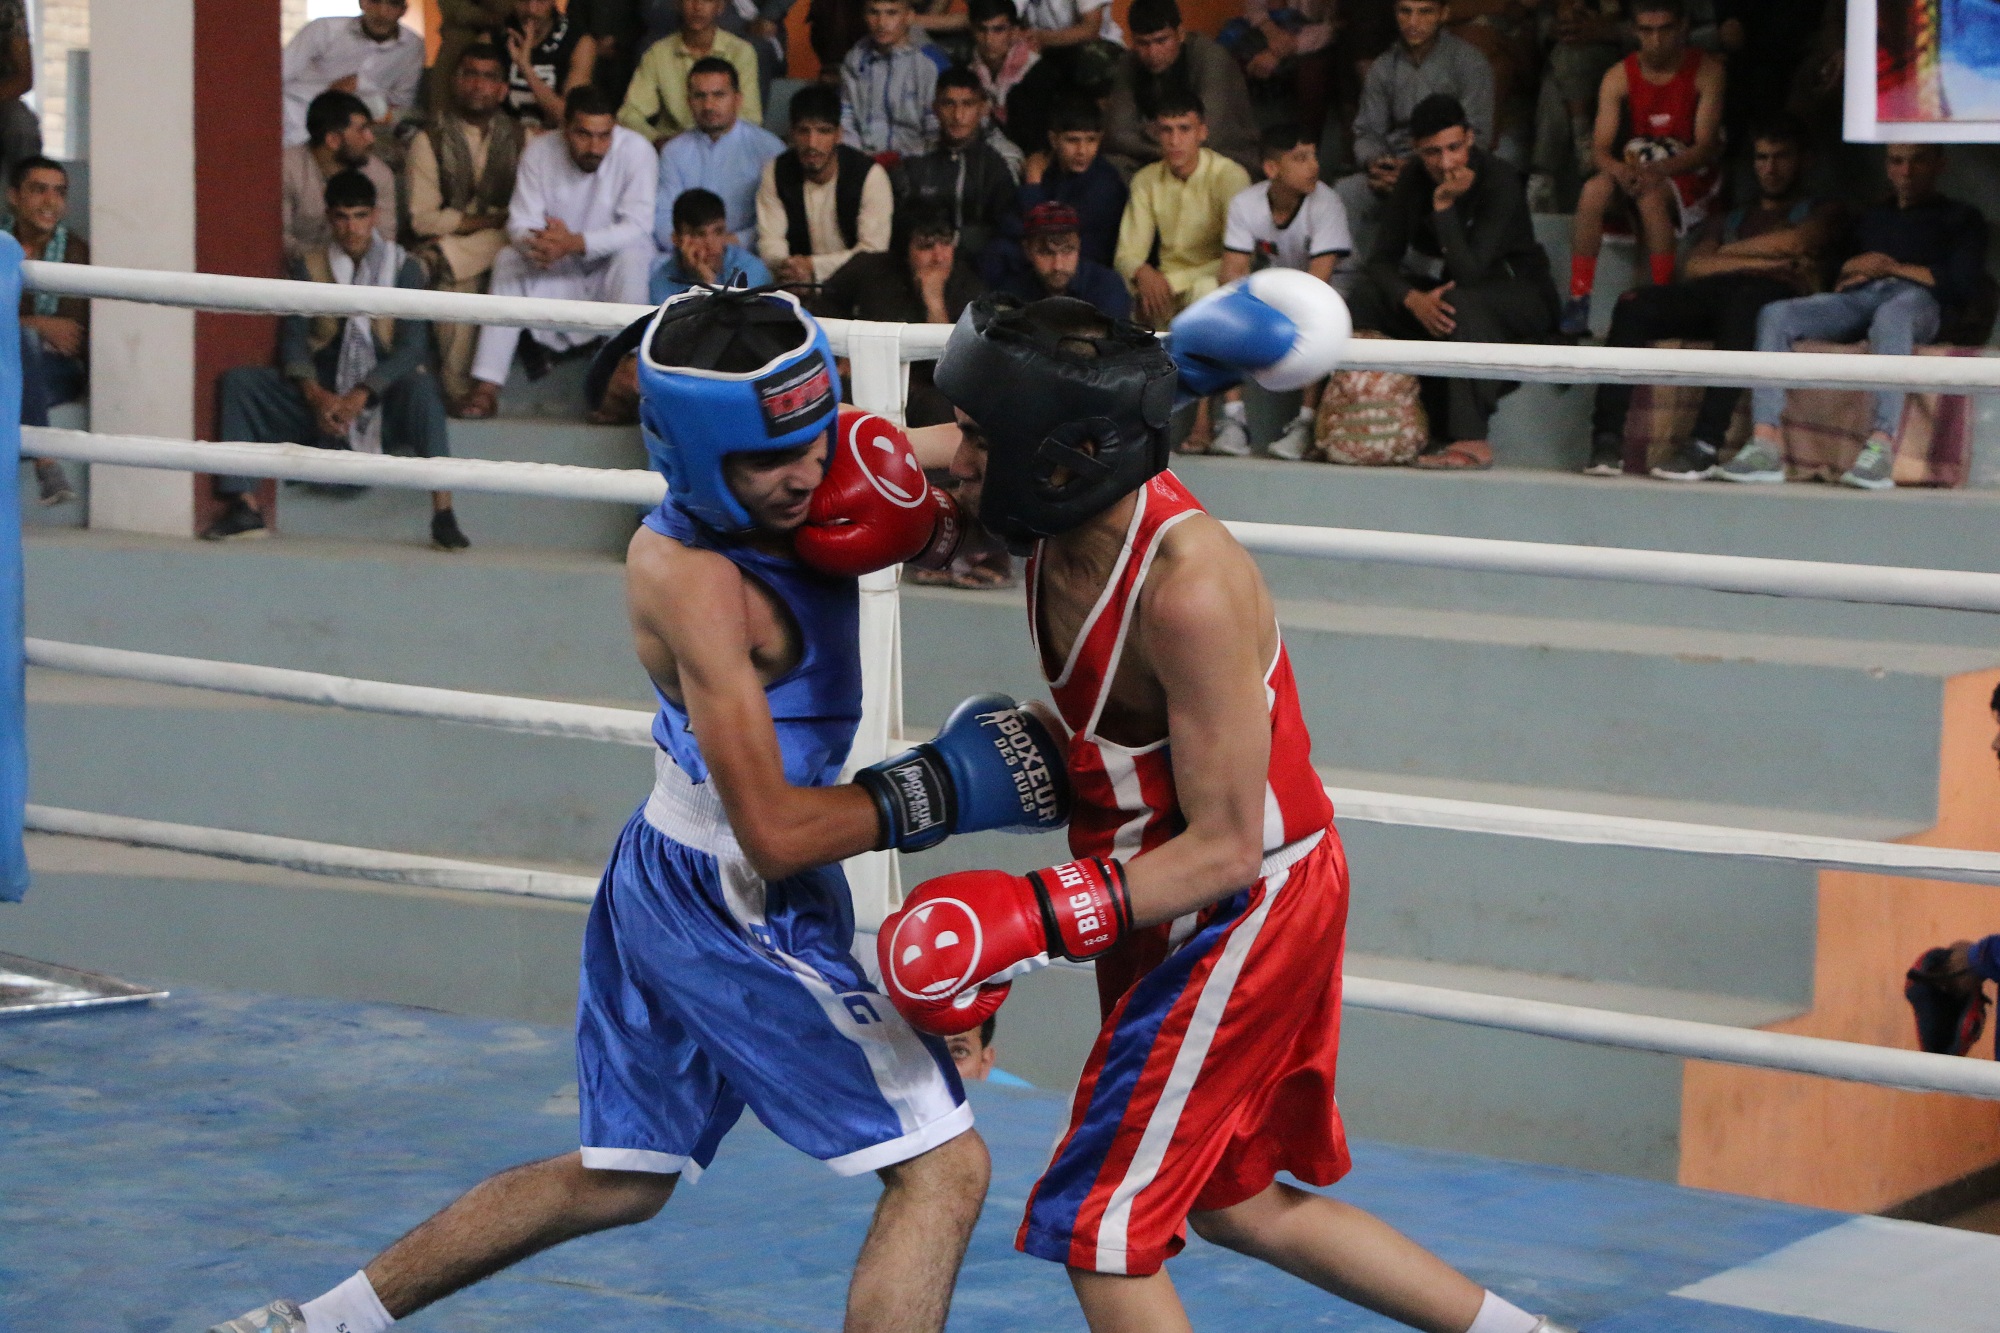 رقابتهای منتخبه تیم ملی نوجوانان مشت زنی کشورامروز در کابل برگزار گردید.